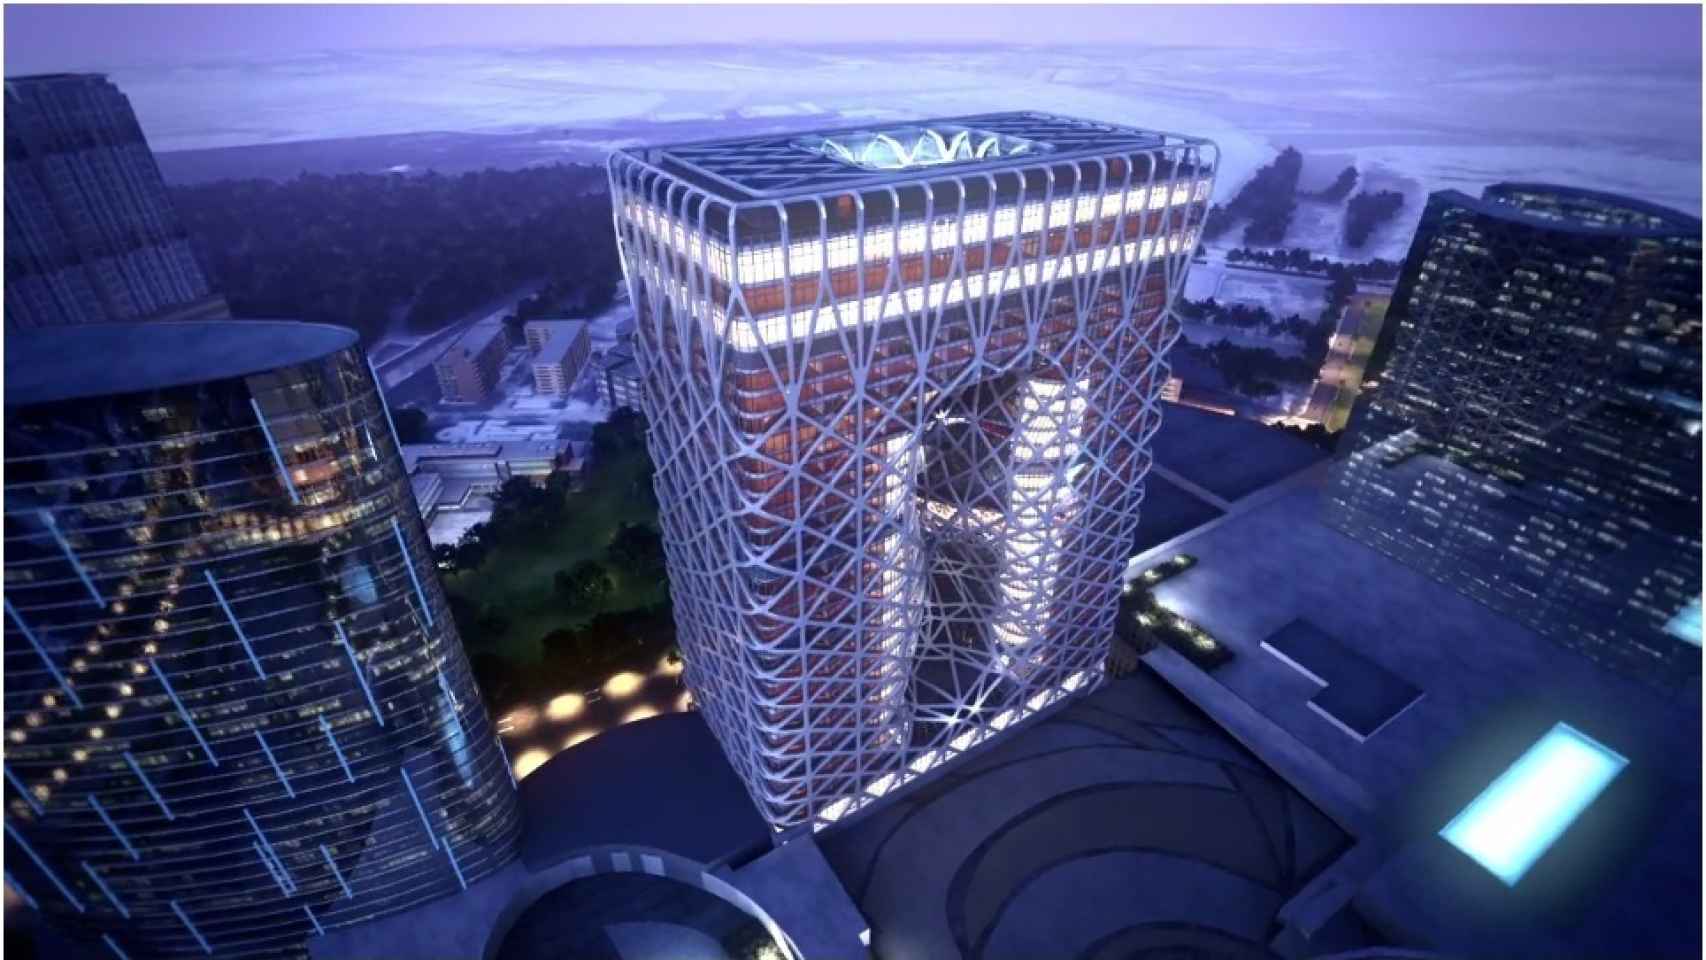 Proyecto de Zaha Hadid de hotel y casino en Macao (China), finalizará en 2017.